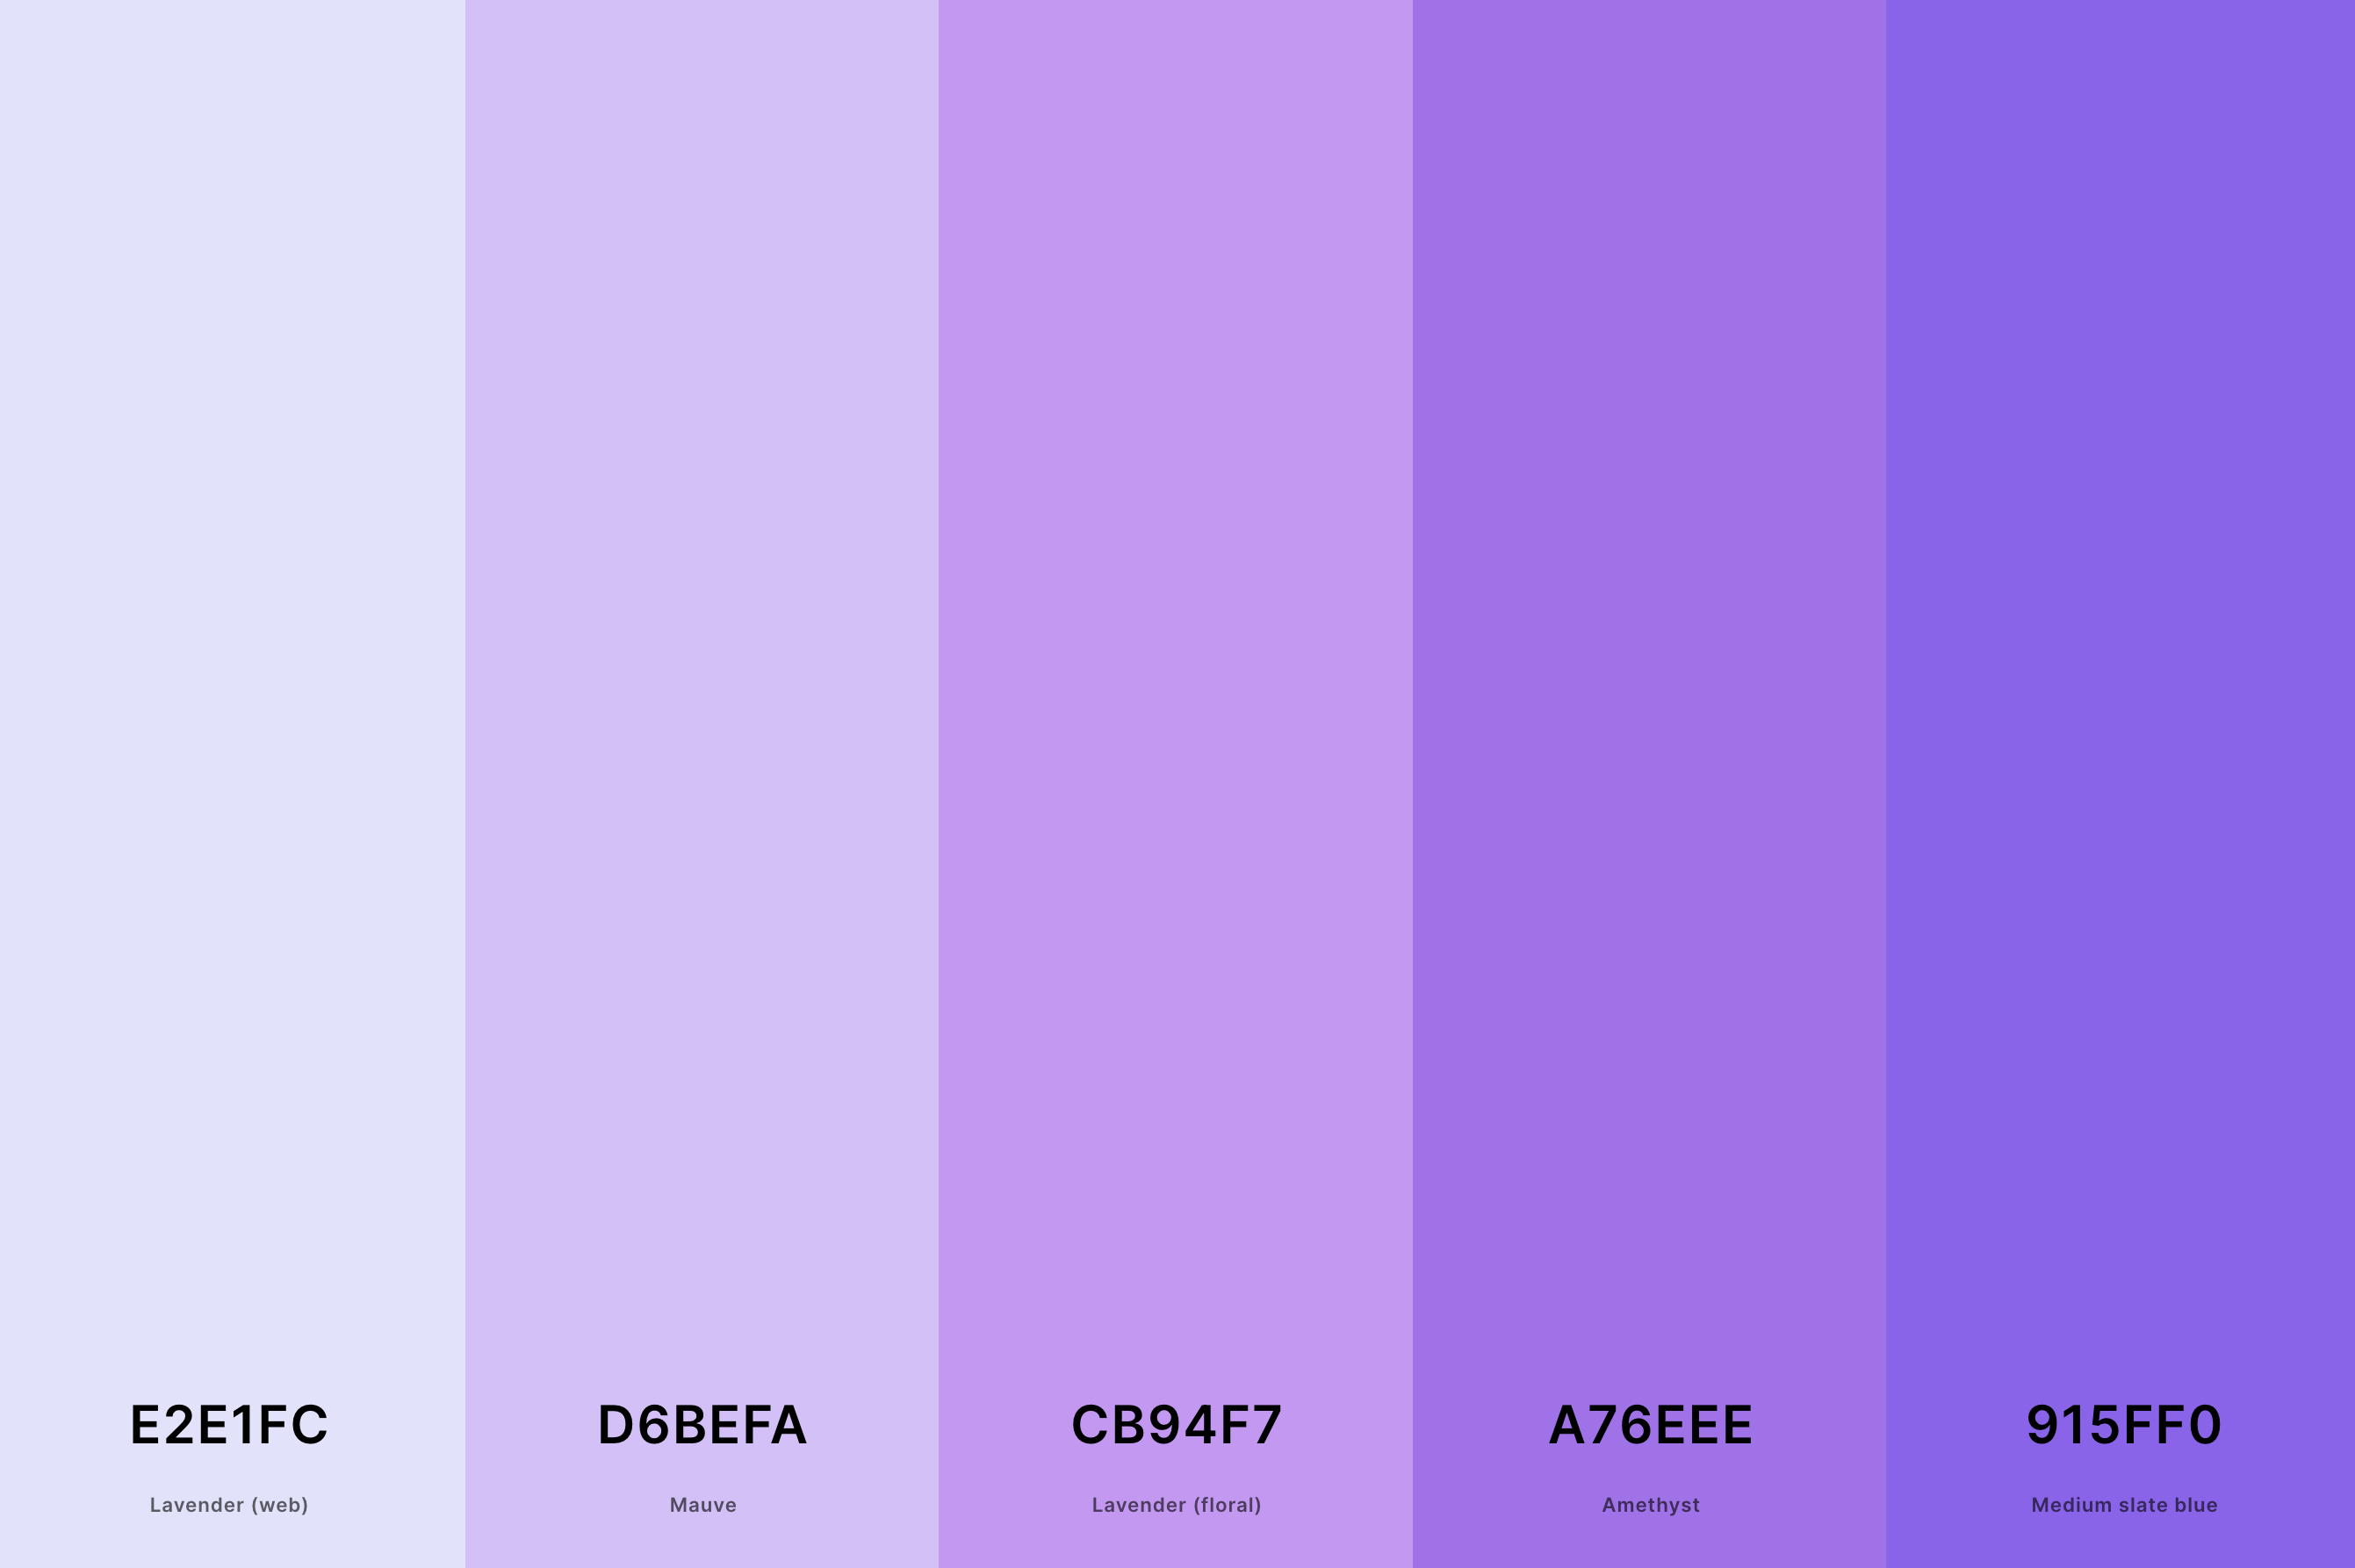 17. Shades Of Lavender Color Palette Color Palette with Lavender (Web) (Hex #E2E1FC) + Mauve (Hex #D6BEFA) + Lavender (Floral) (Hex #CB94F7) + Amethyst (Hex #A76EEE) + Medium Slate Blue (Hex #915FF0) Color Palette with Hex Codes